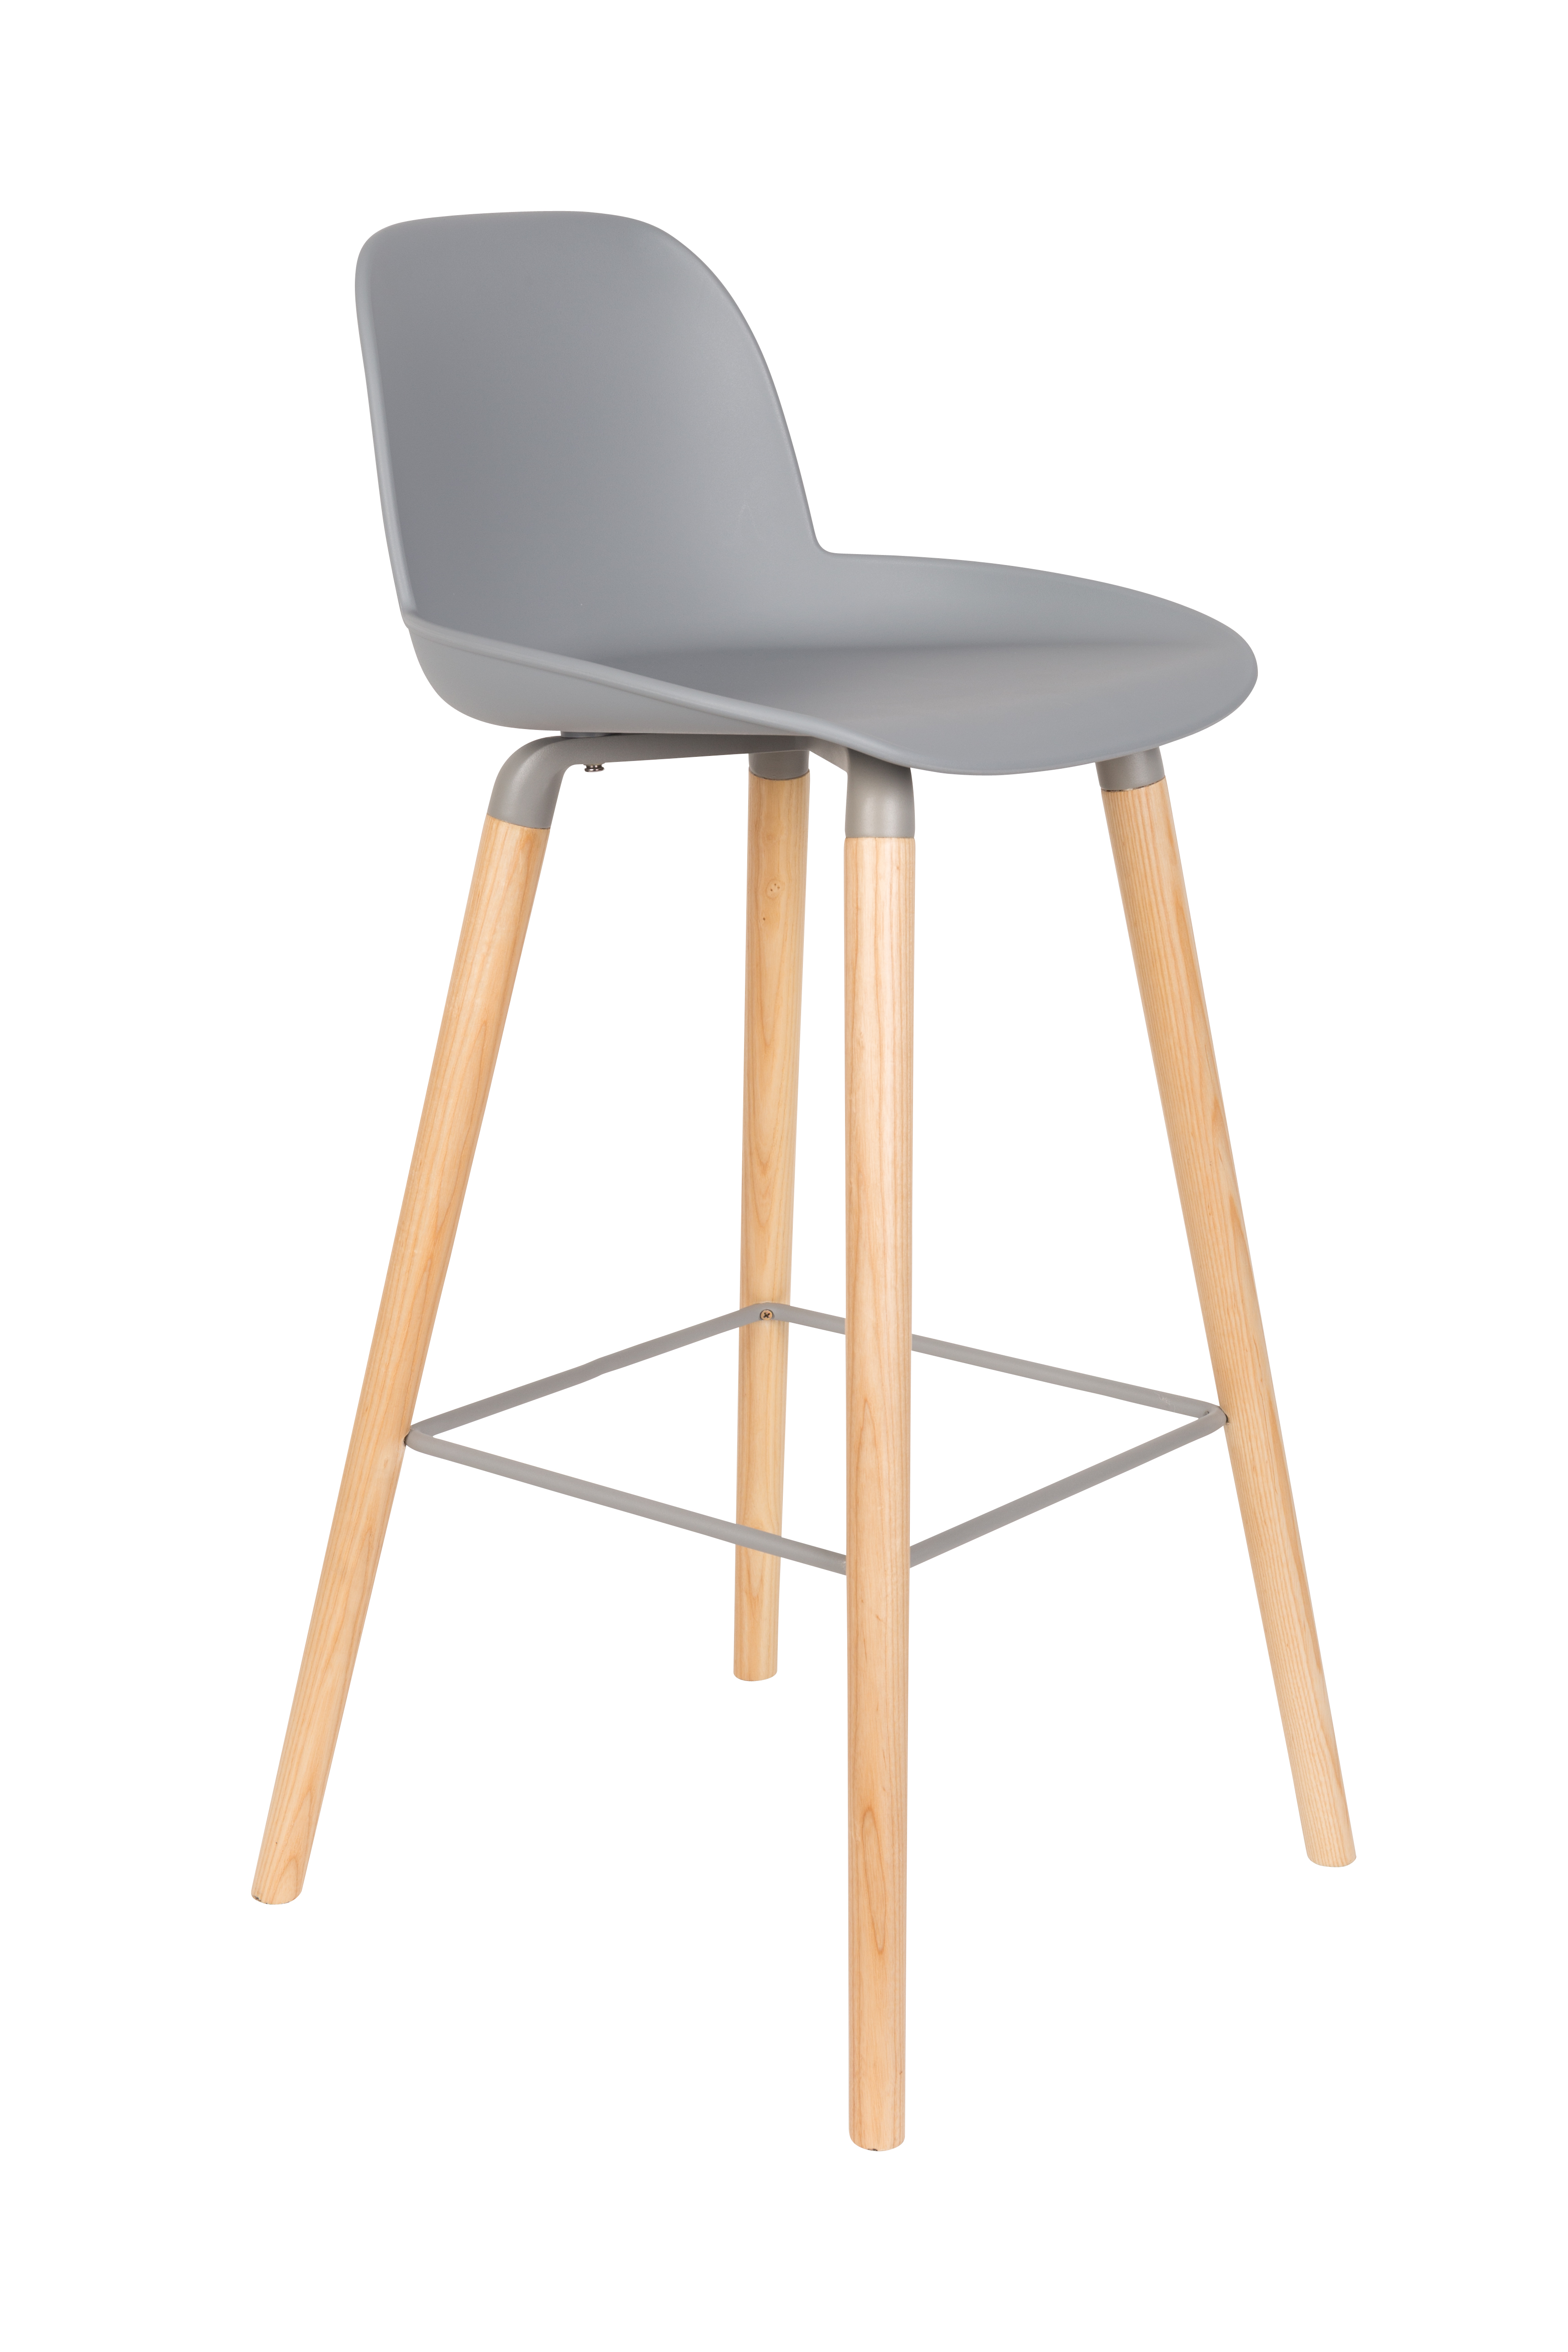 ZUIVER Albert Kuip barstol, m. ryglæn og fodstøtte – lysegrå polypropylen/natur ask (75cm)